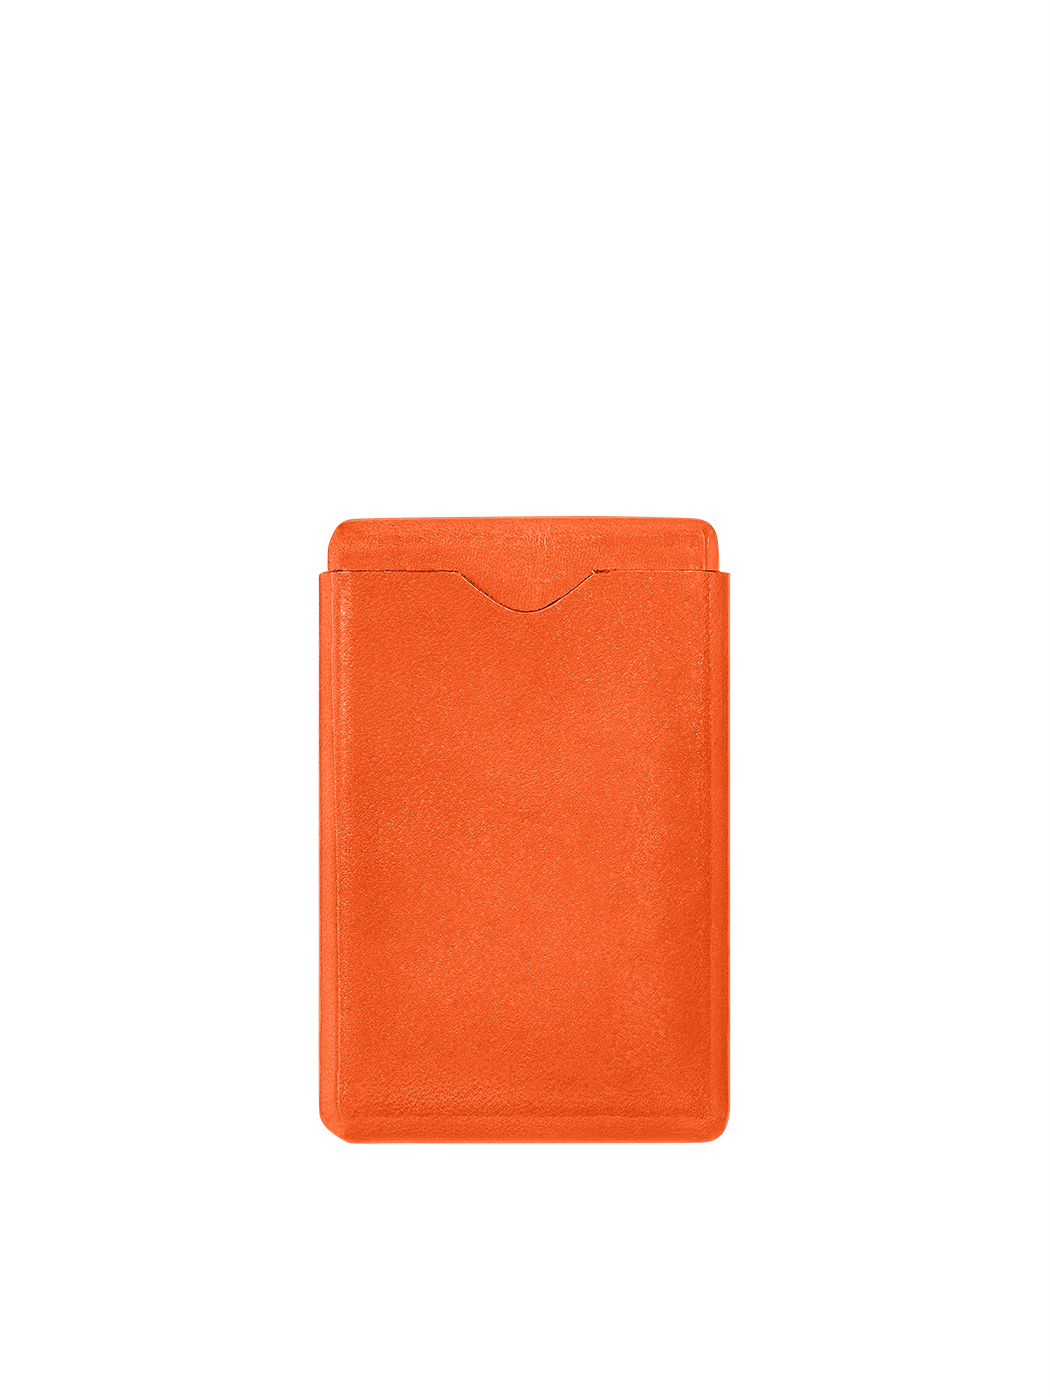 Кожаный футляр для визитных карточек оранжевого цвета